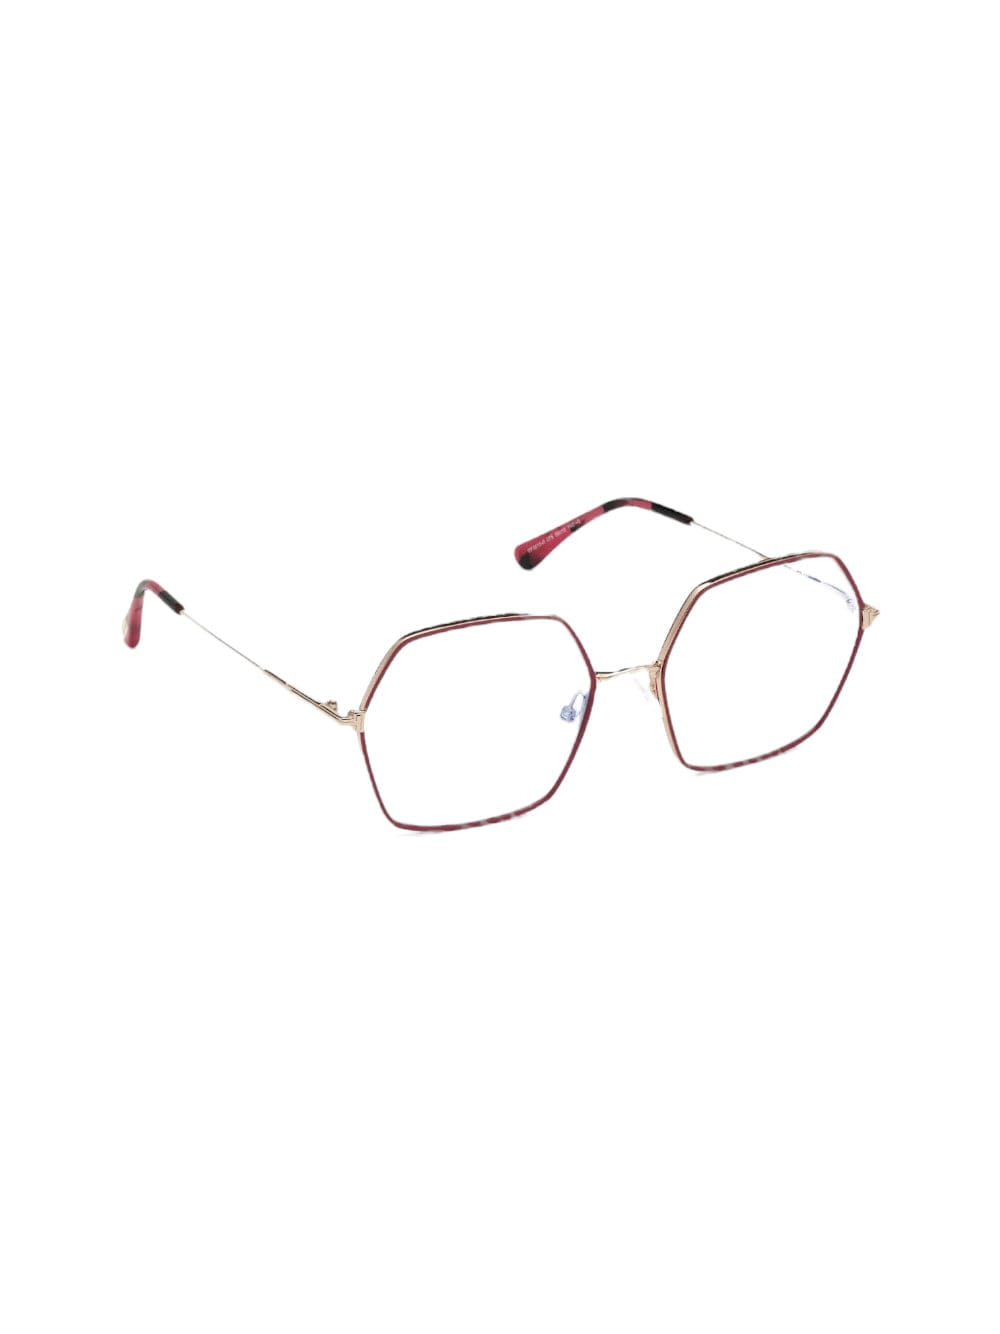 Shop Tom Ford Ft 5615 - Gold & Pink Glasses